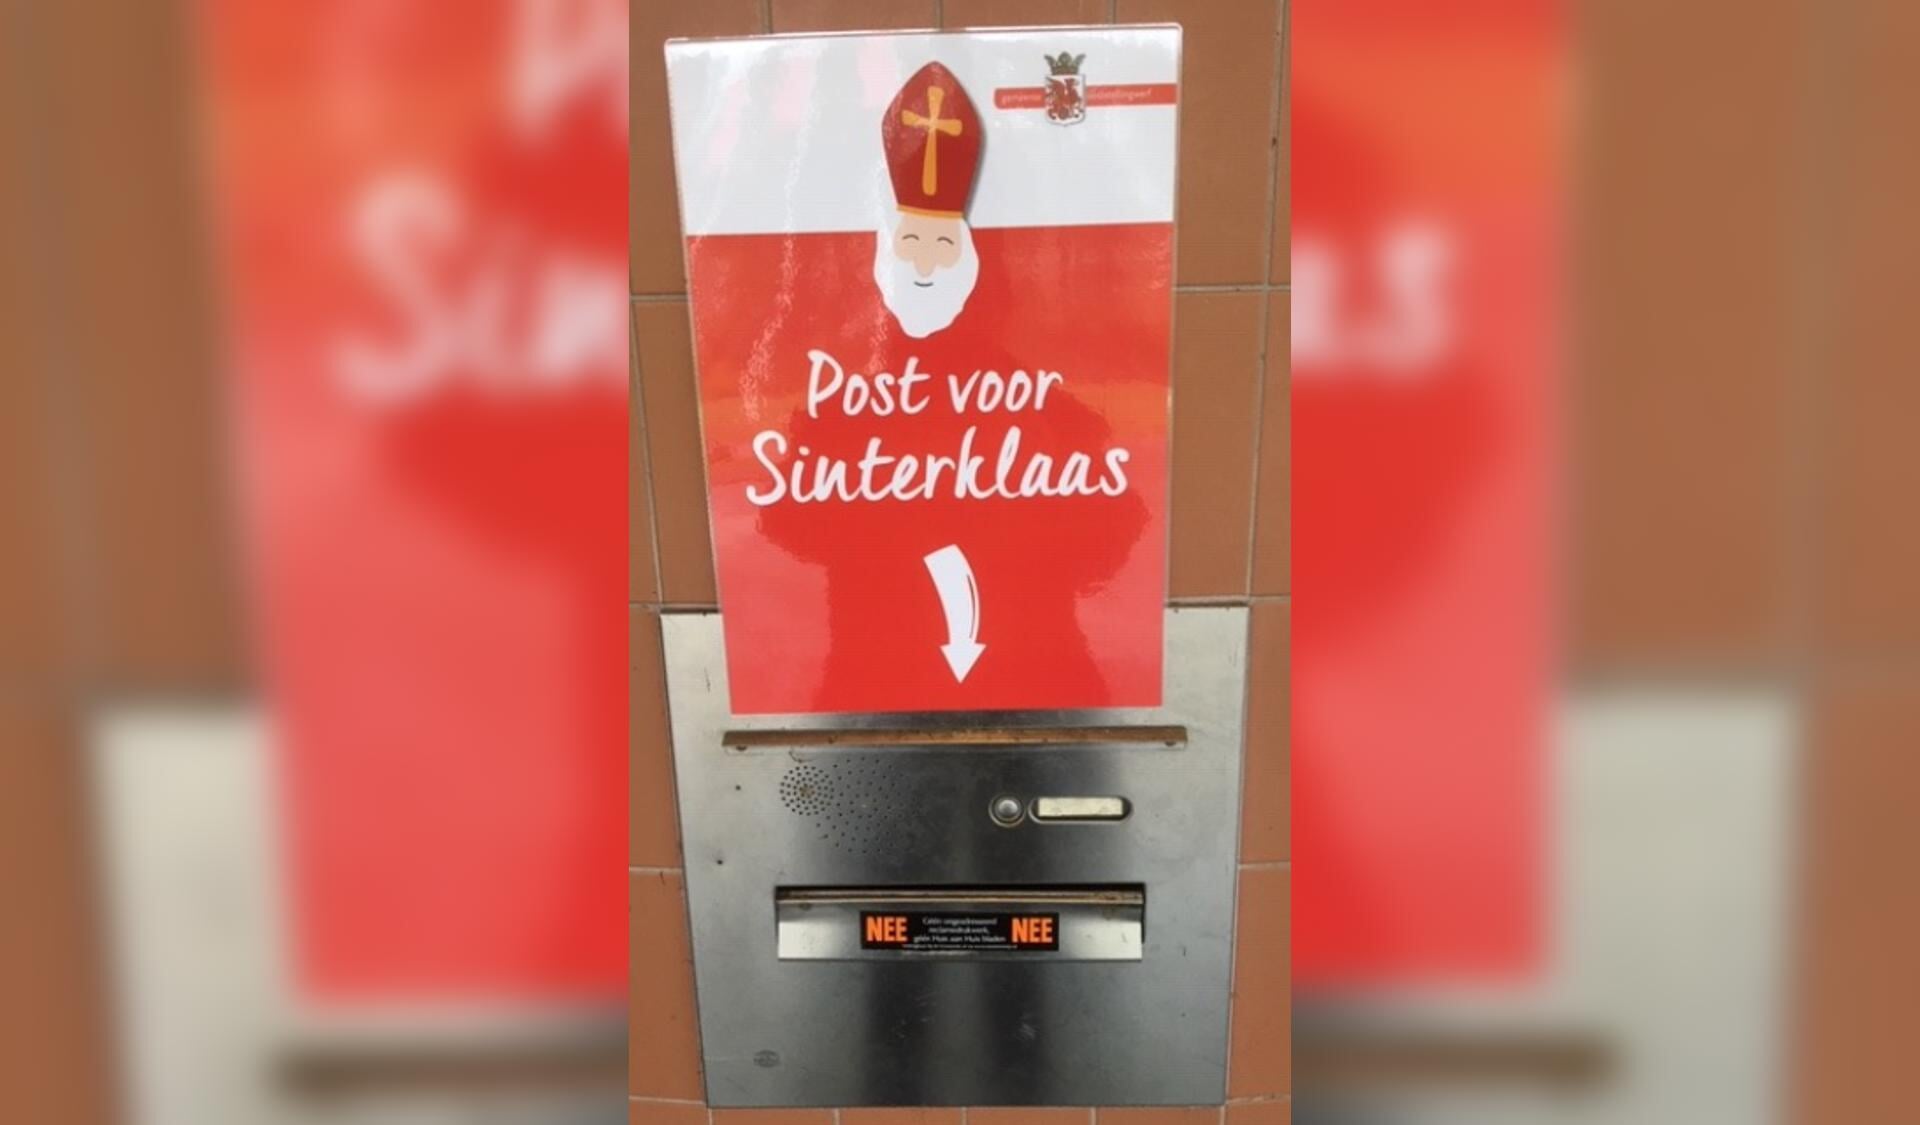 De speciale Sinterklaas-brievenbus aan de muur van het gemeentehuis in Oosterwolde.